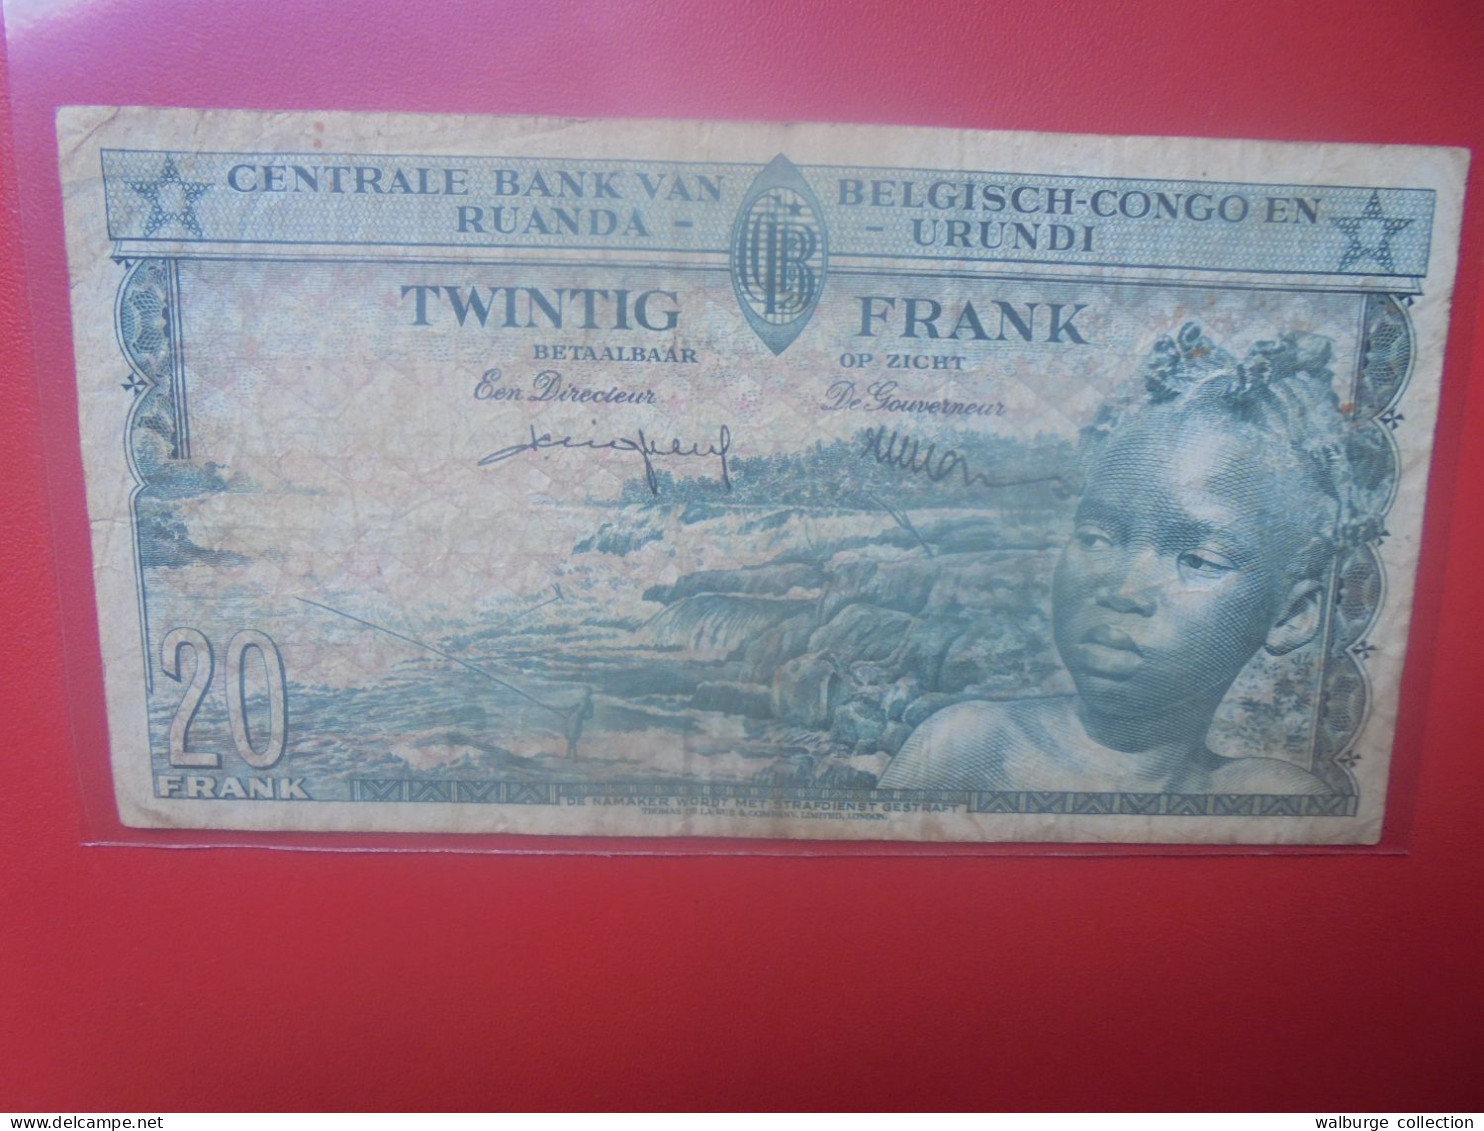 CONGO BELGE 20 FRANCS 1-8-57 Circuler (B.33) - Banca Del Congo Belga